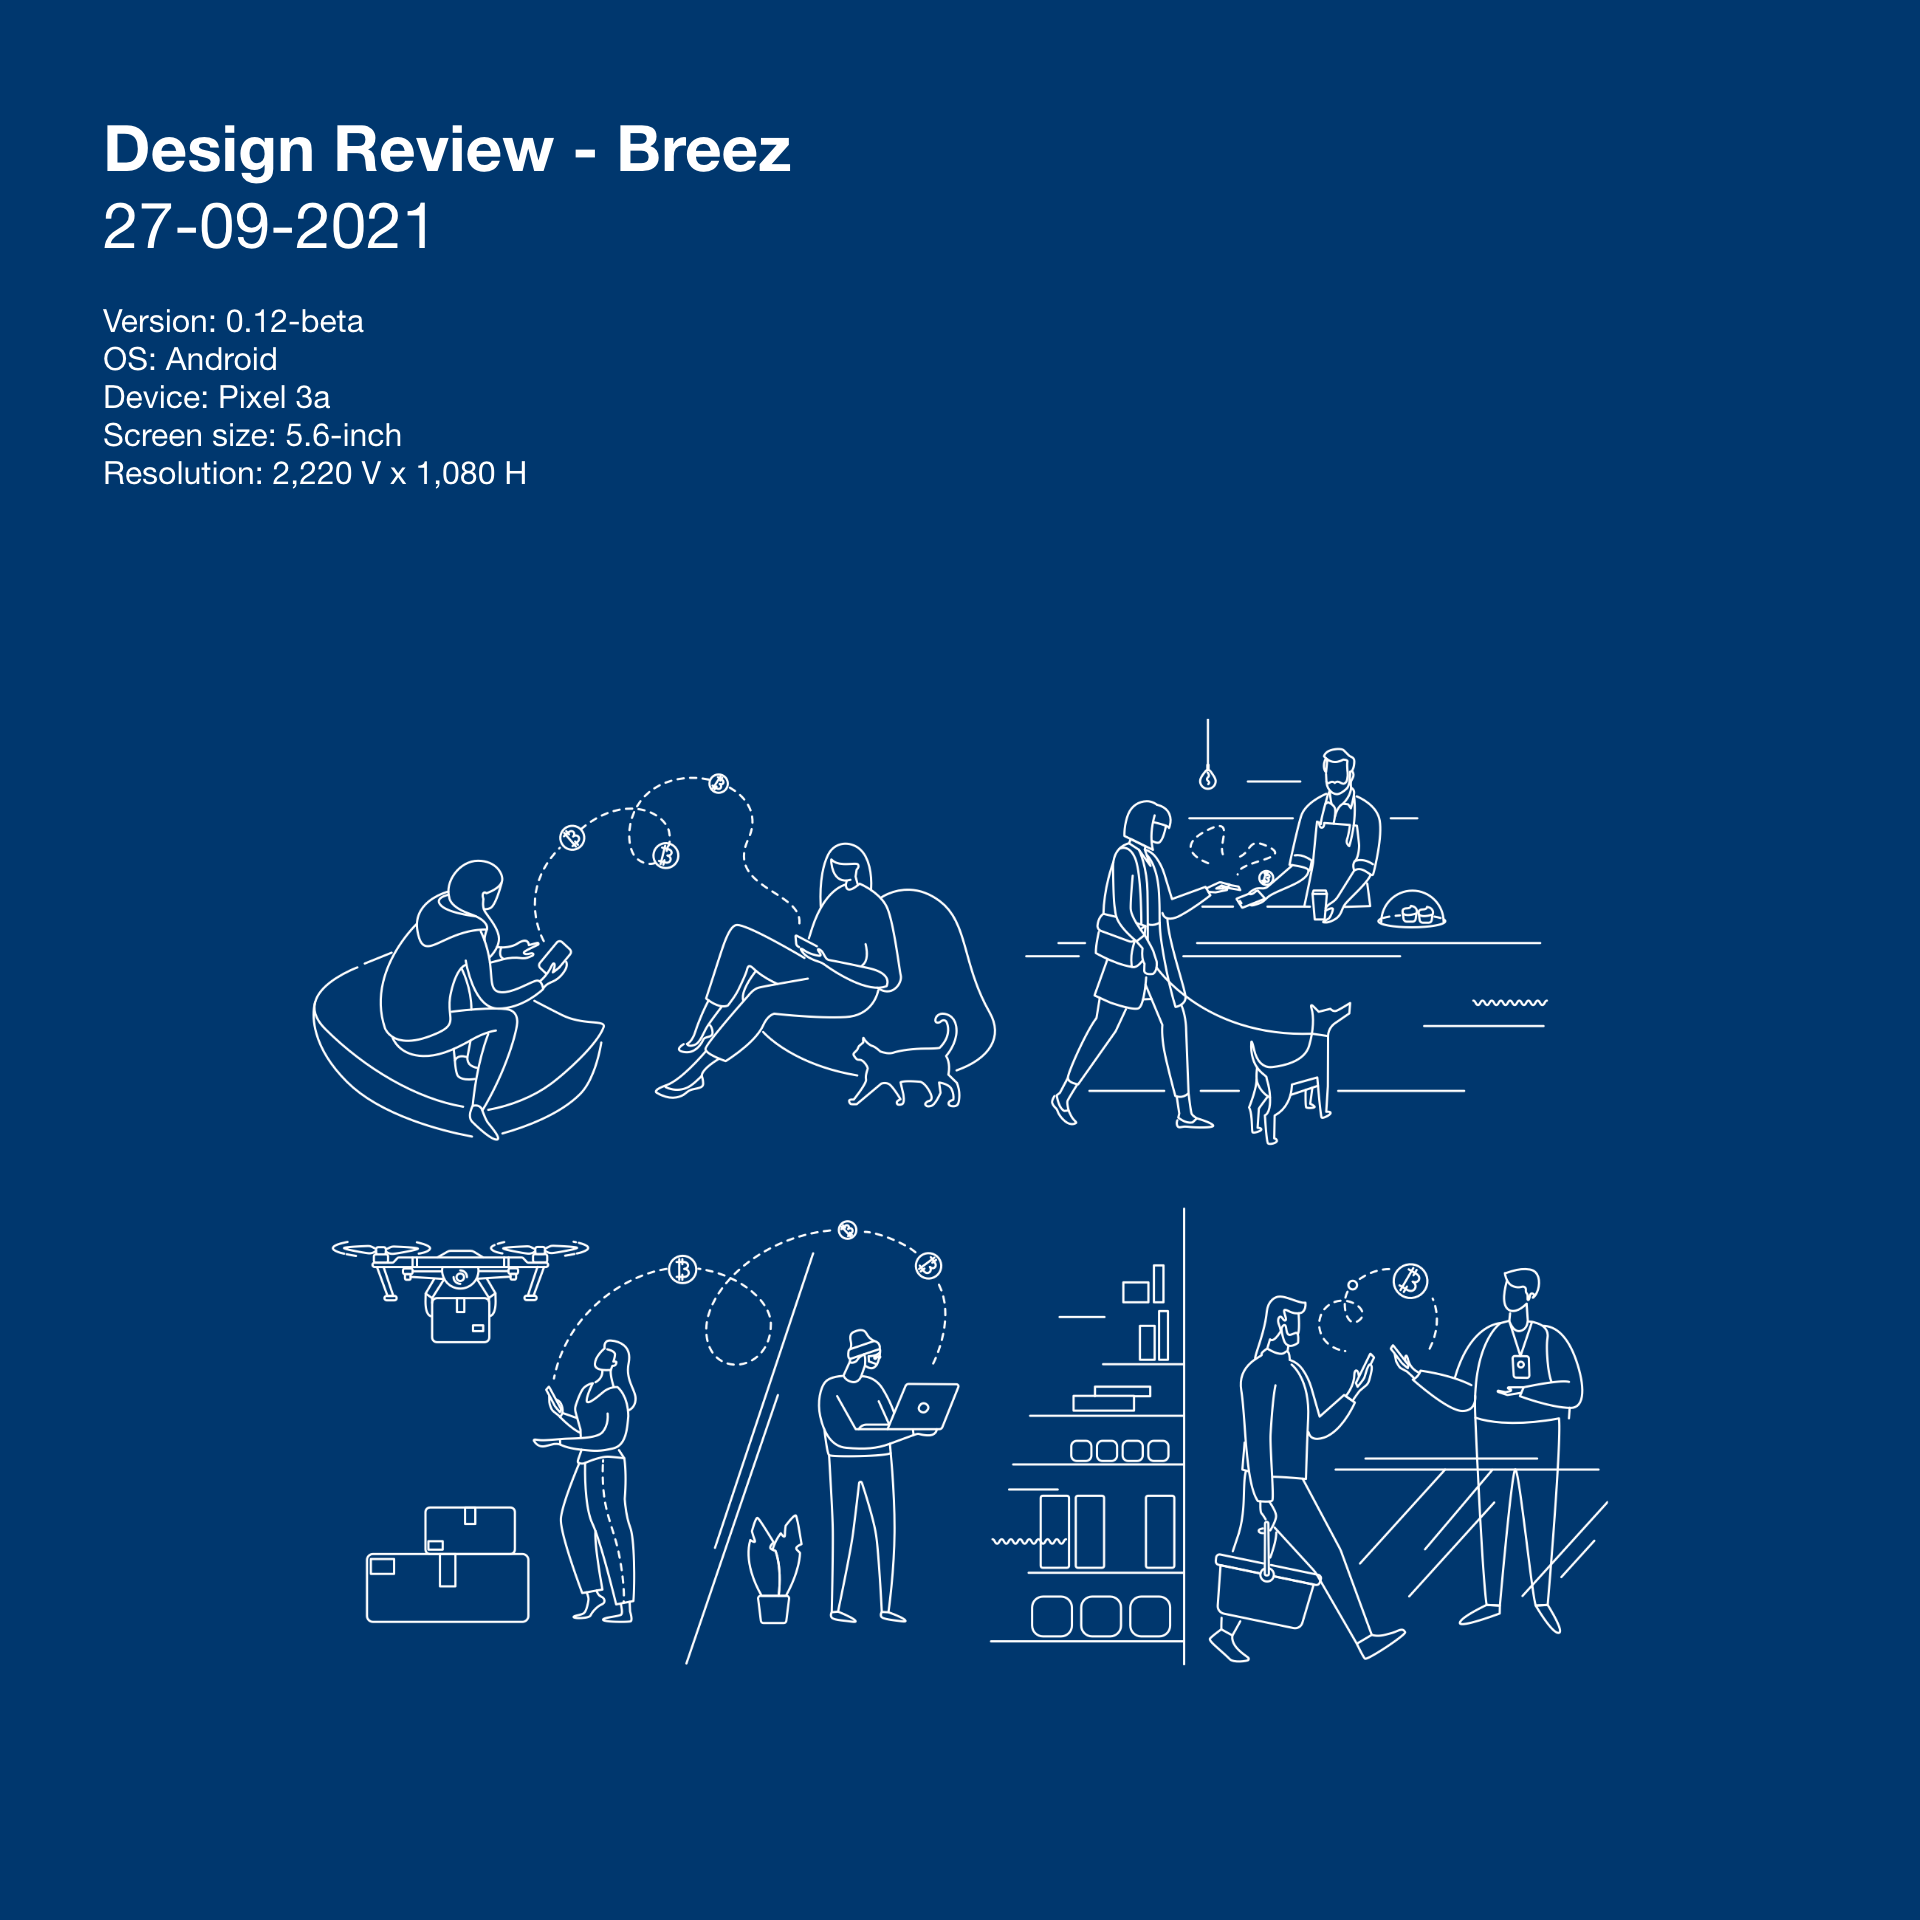 Breez: Design Review